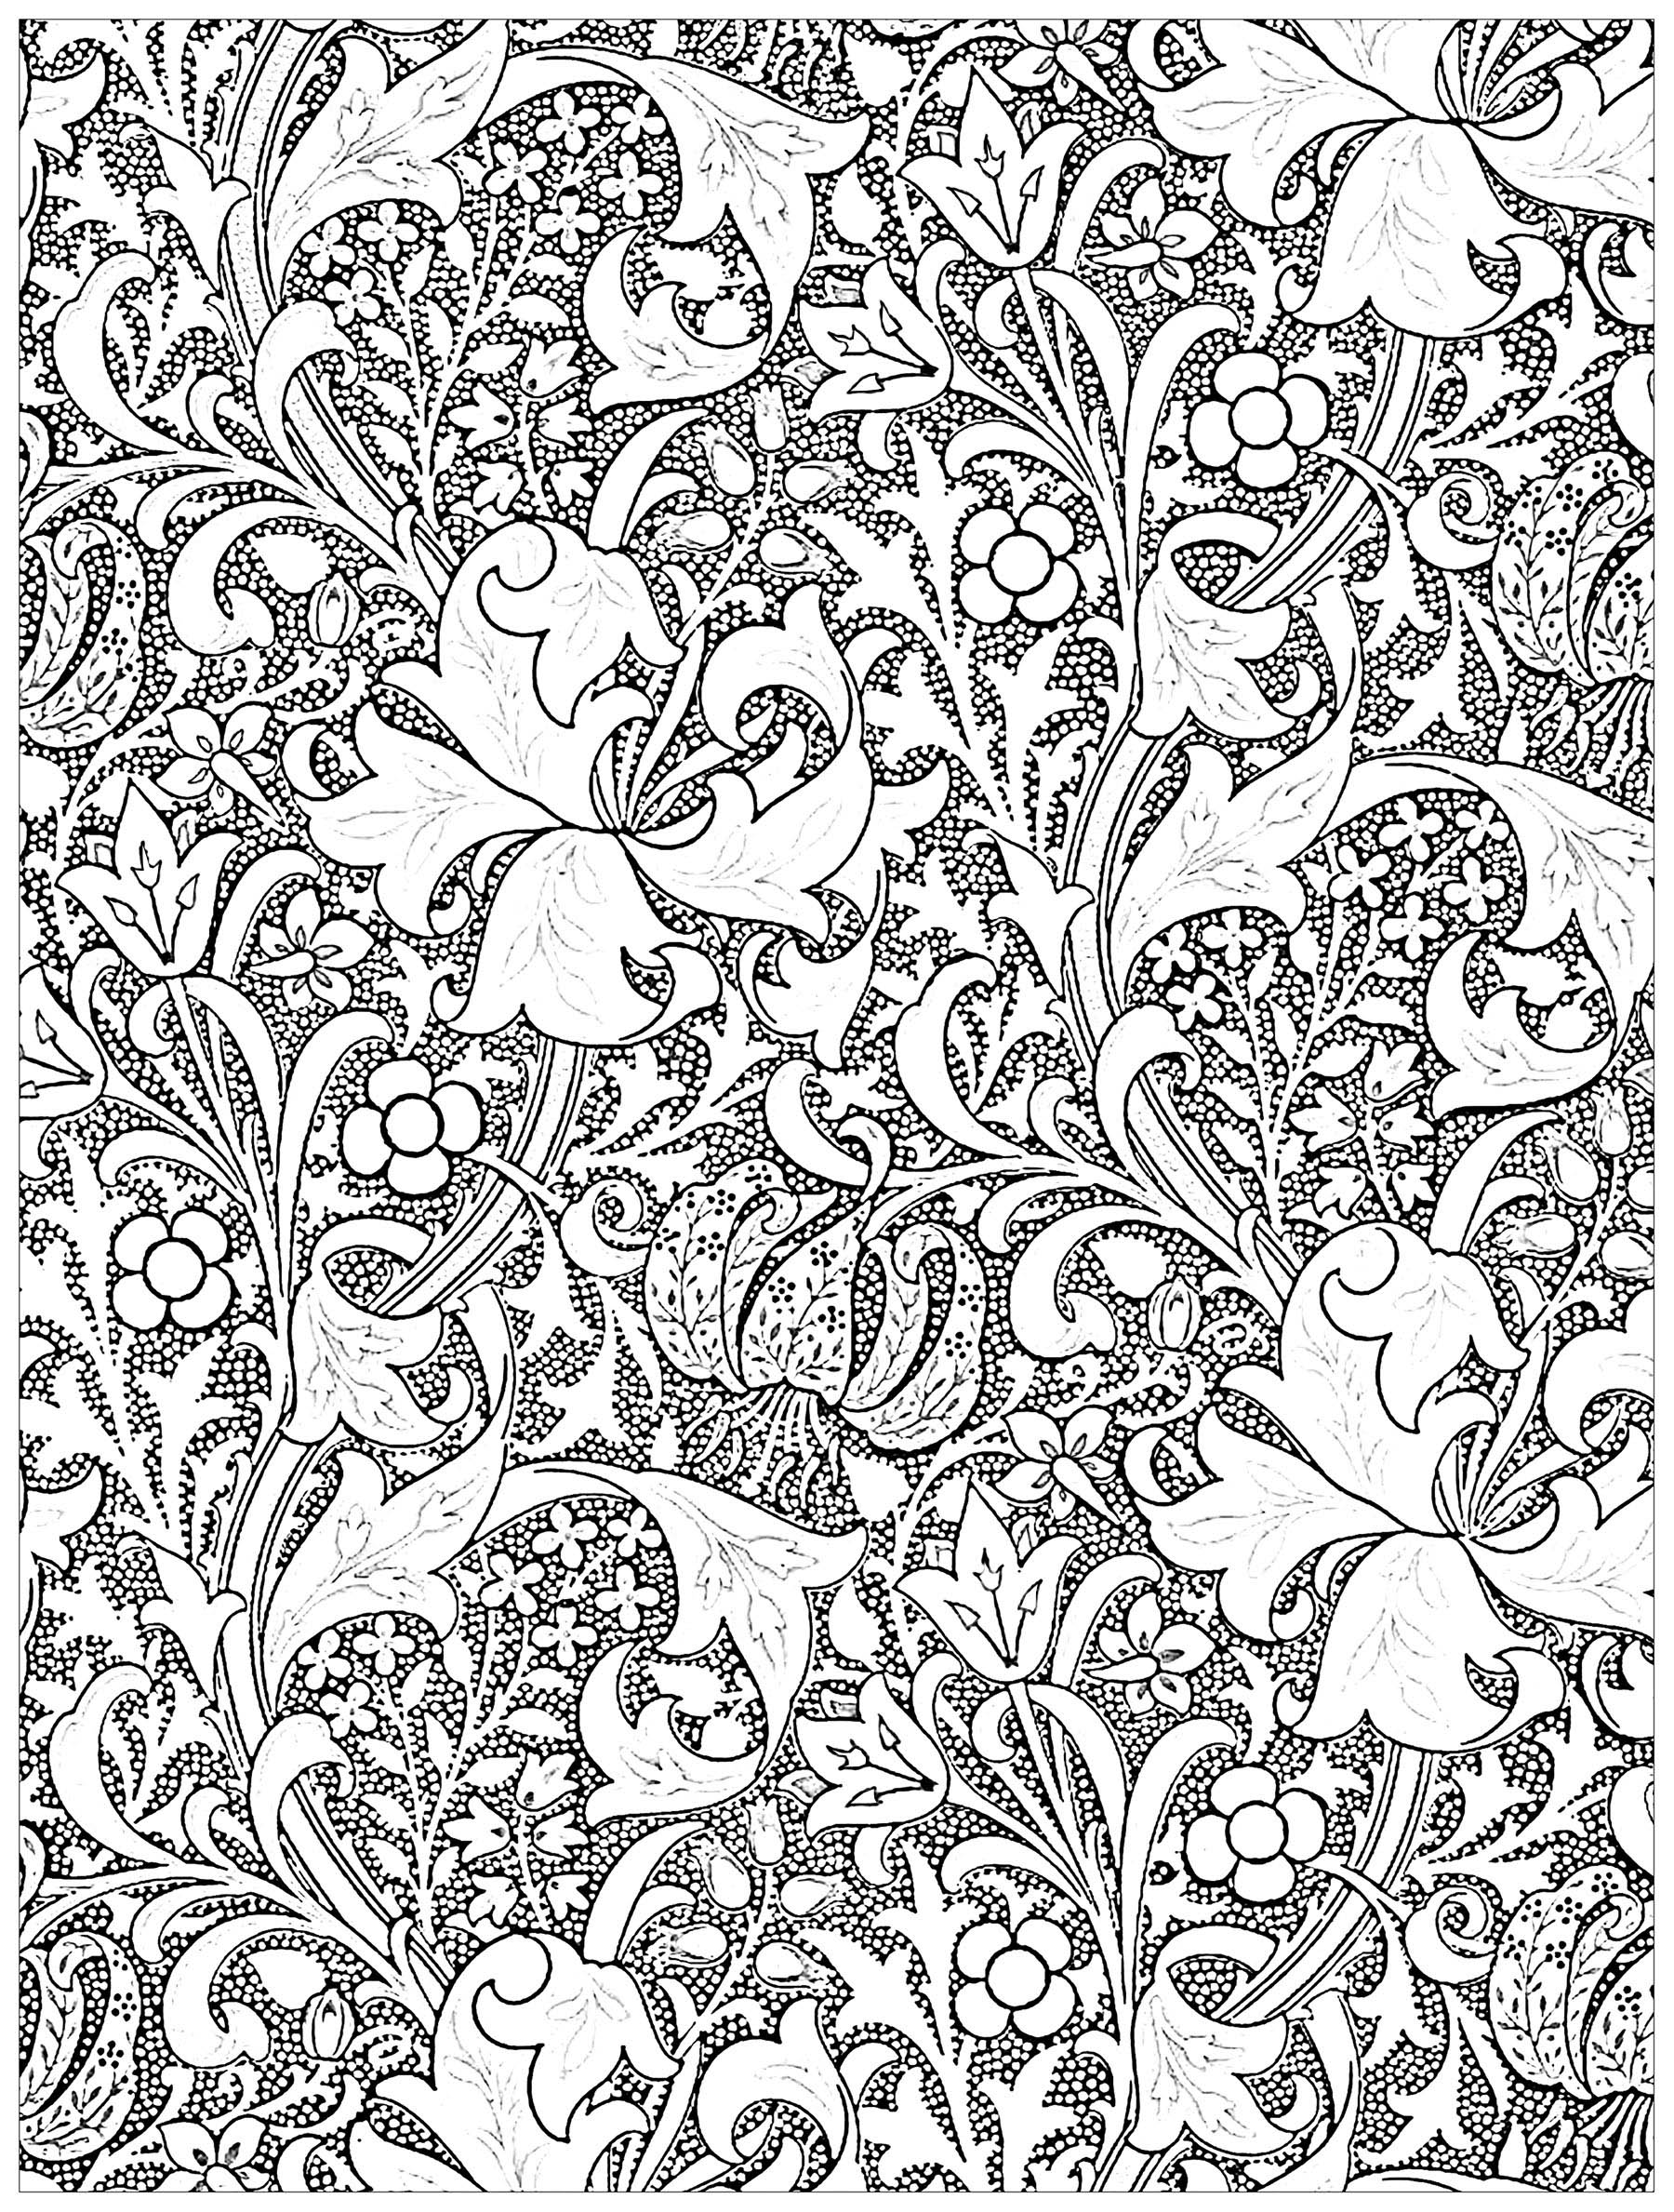 Coloriage exclusif réalisé à partir d'une oeuvre Art Nouveau sur textile de John Henry Dearle : Golden Lily (1899) ... Coloriez ces tiges et tendres lys entrelacés ...